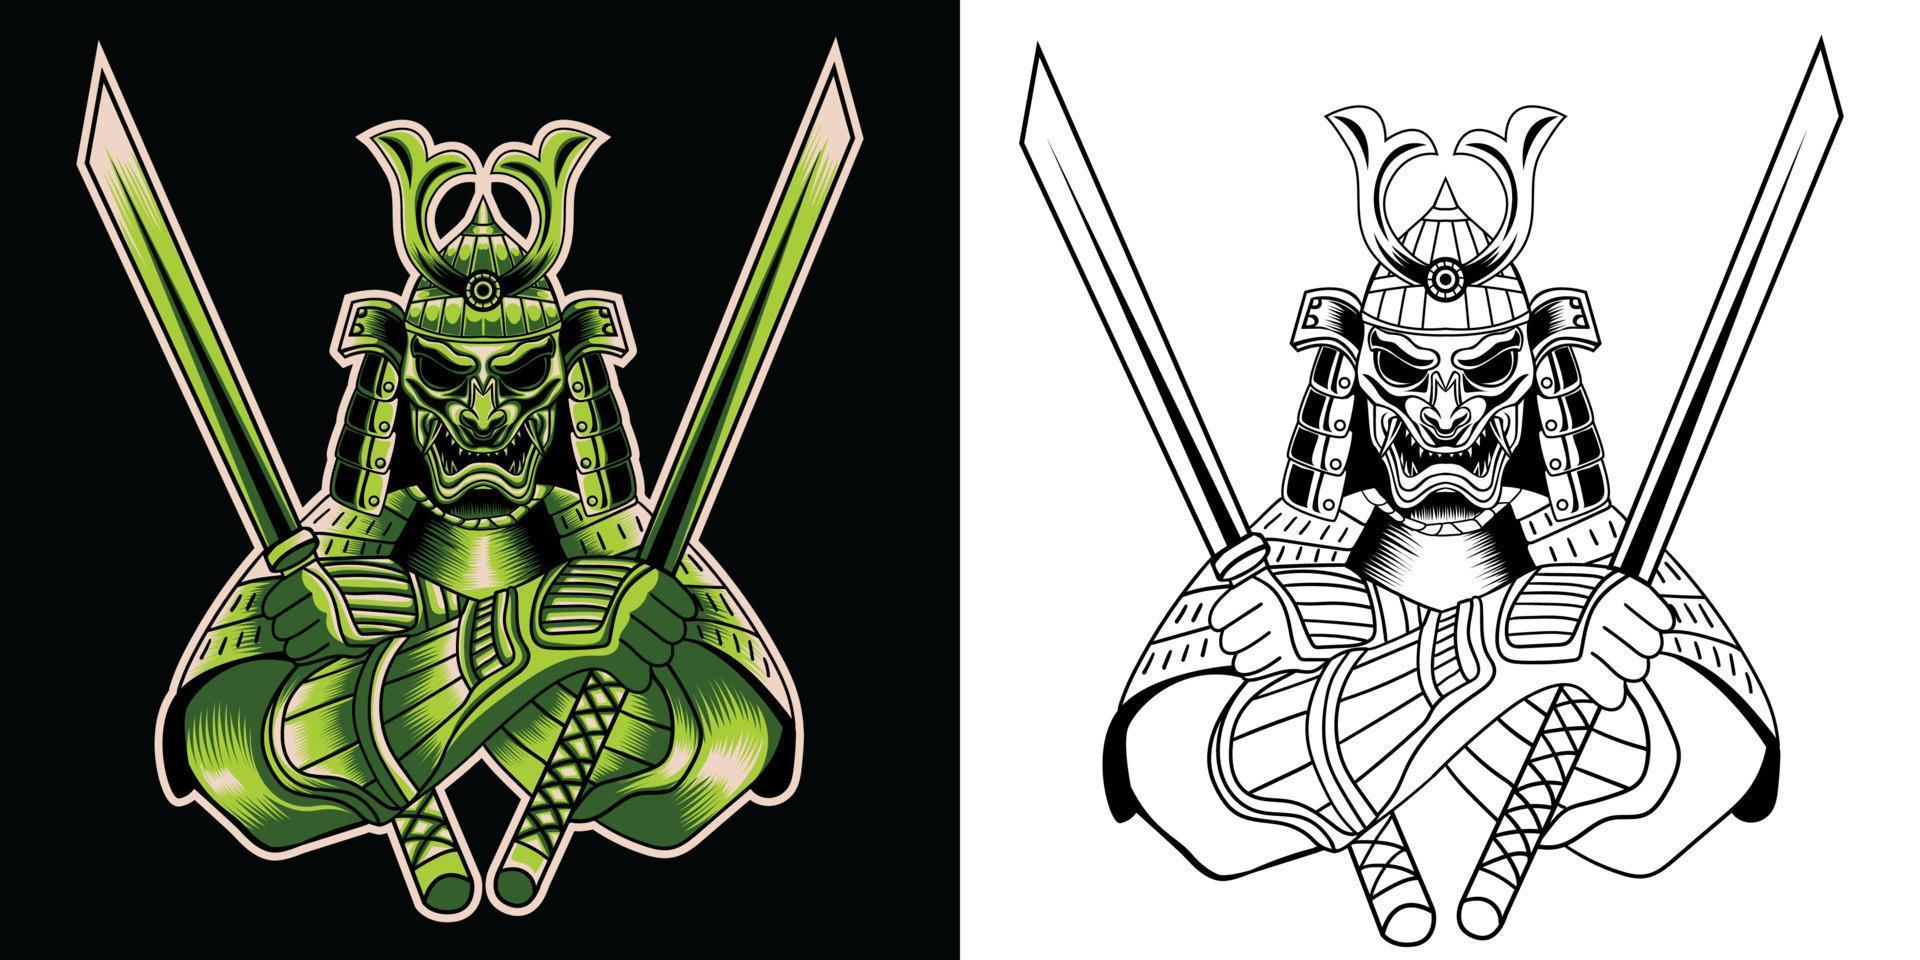 samurai ninja monstruo mascota esport logo diseño ilustraciones vector plantilla, devil ninja logo para equipo juego streamer banner discordia, estilo de dibujos animados a todo color